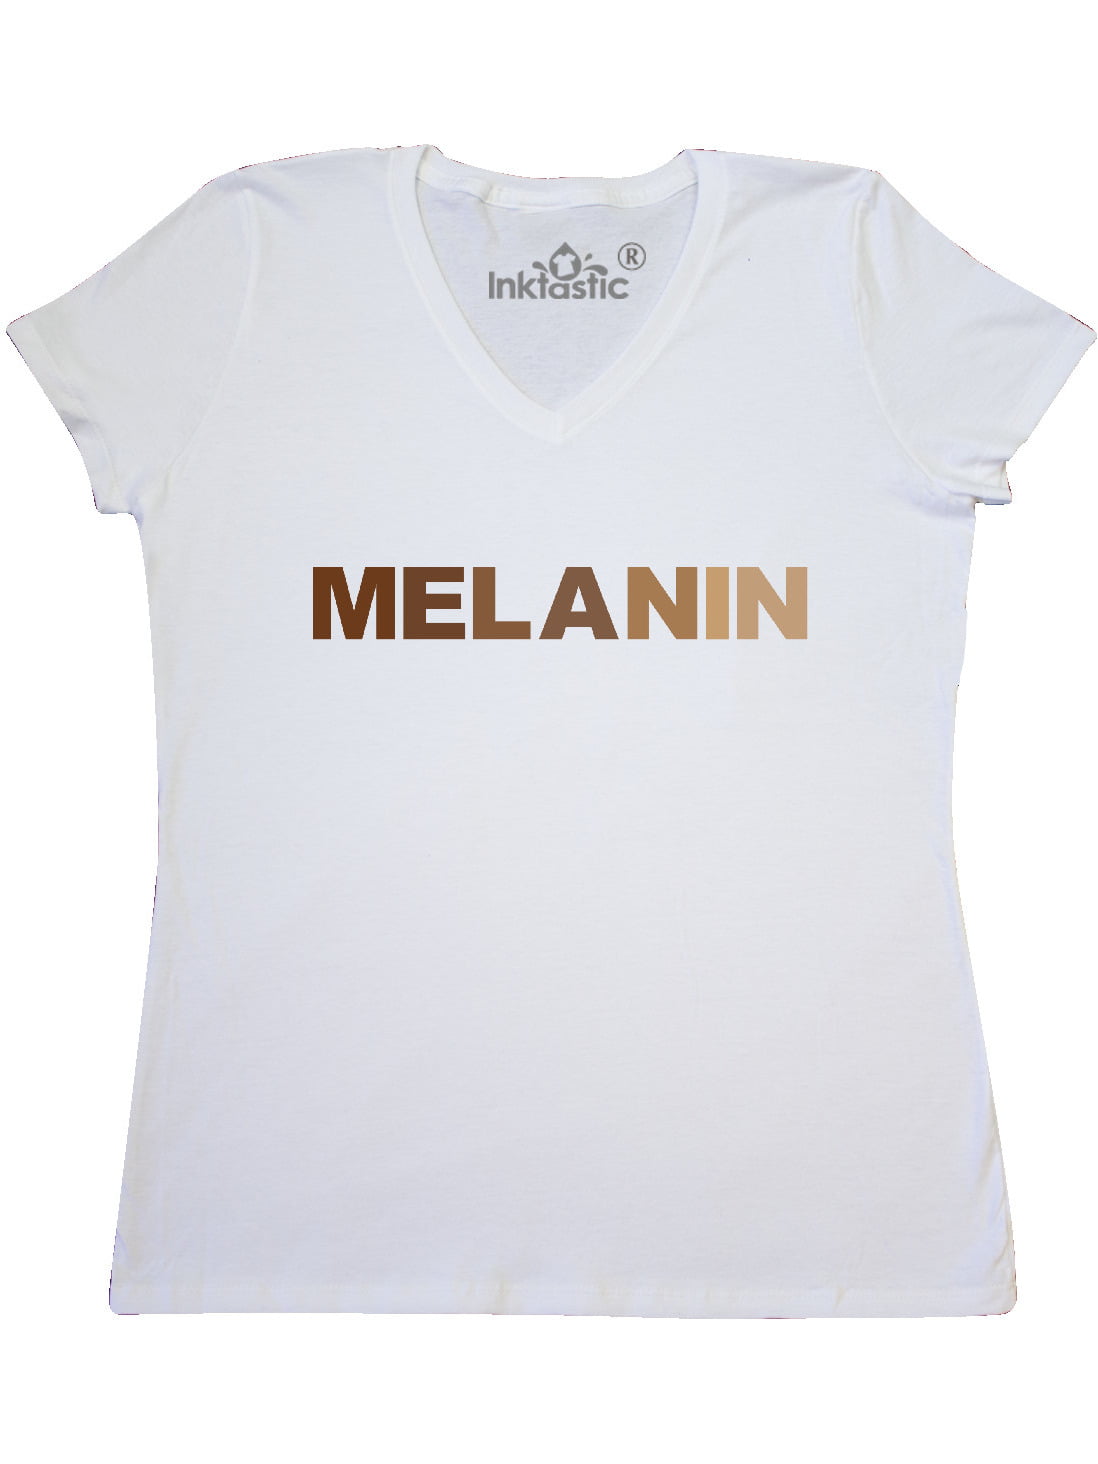 Women's Ladies Got Melanin V Neck T Shirt